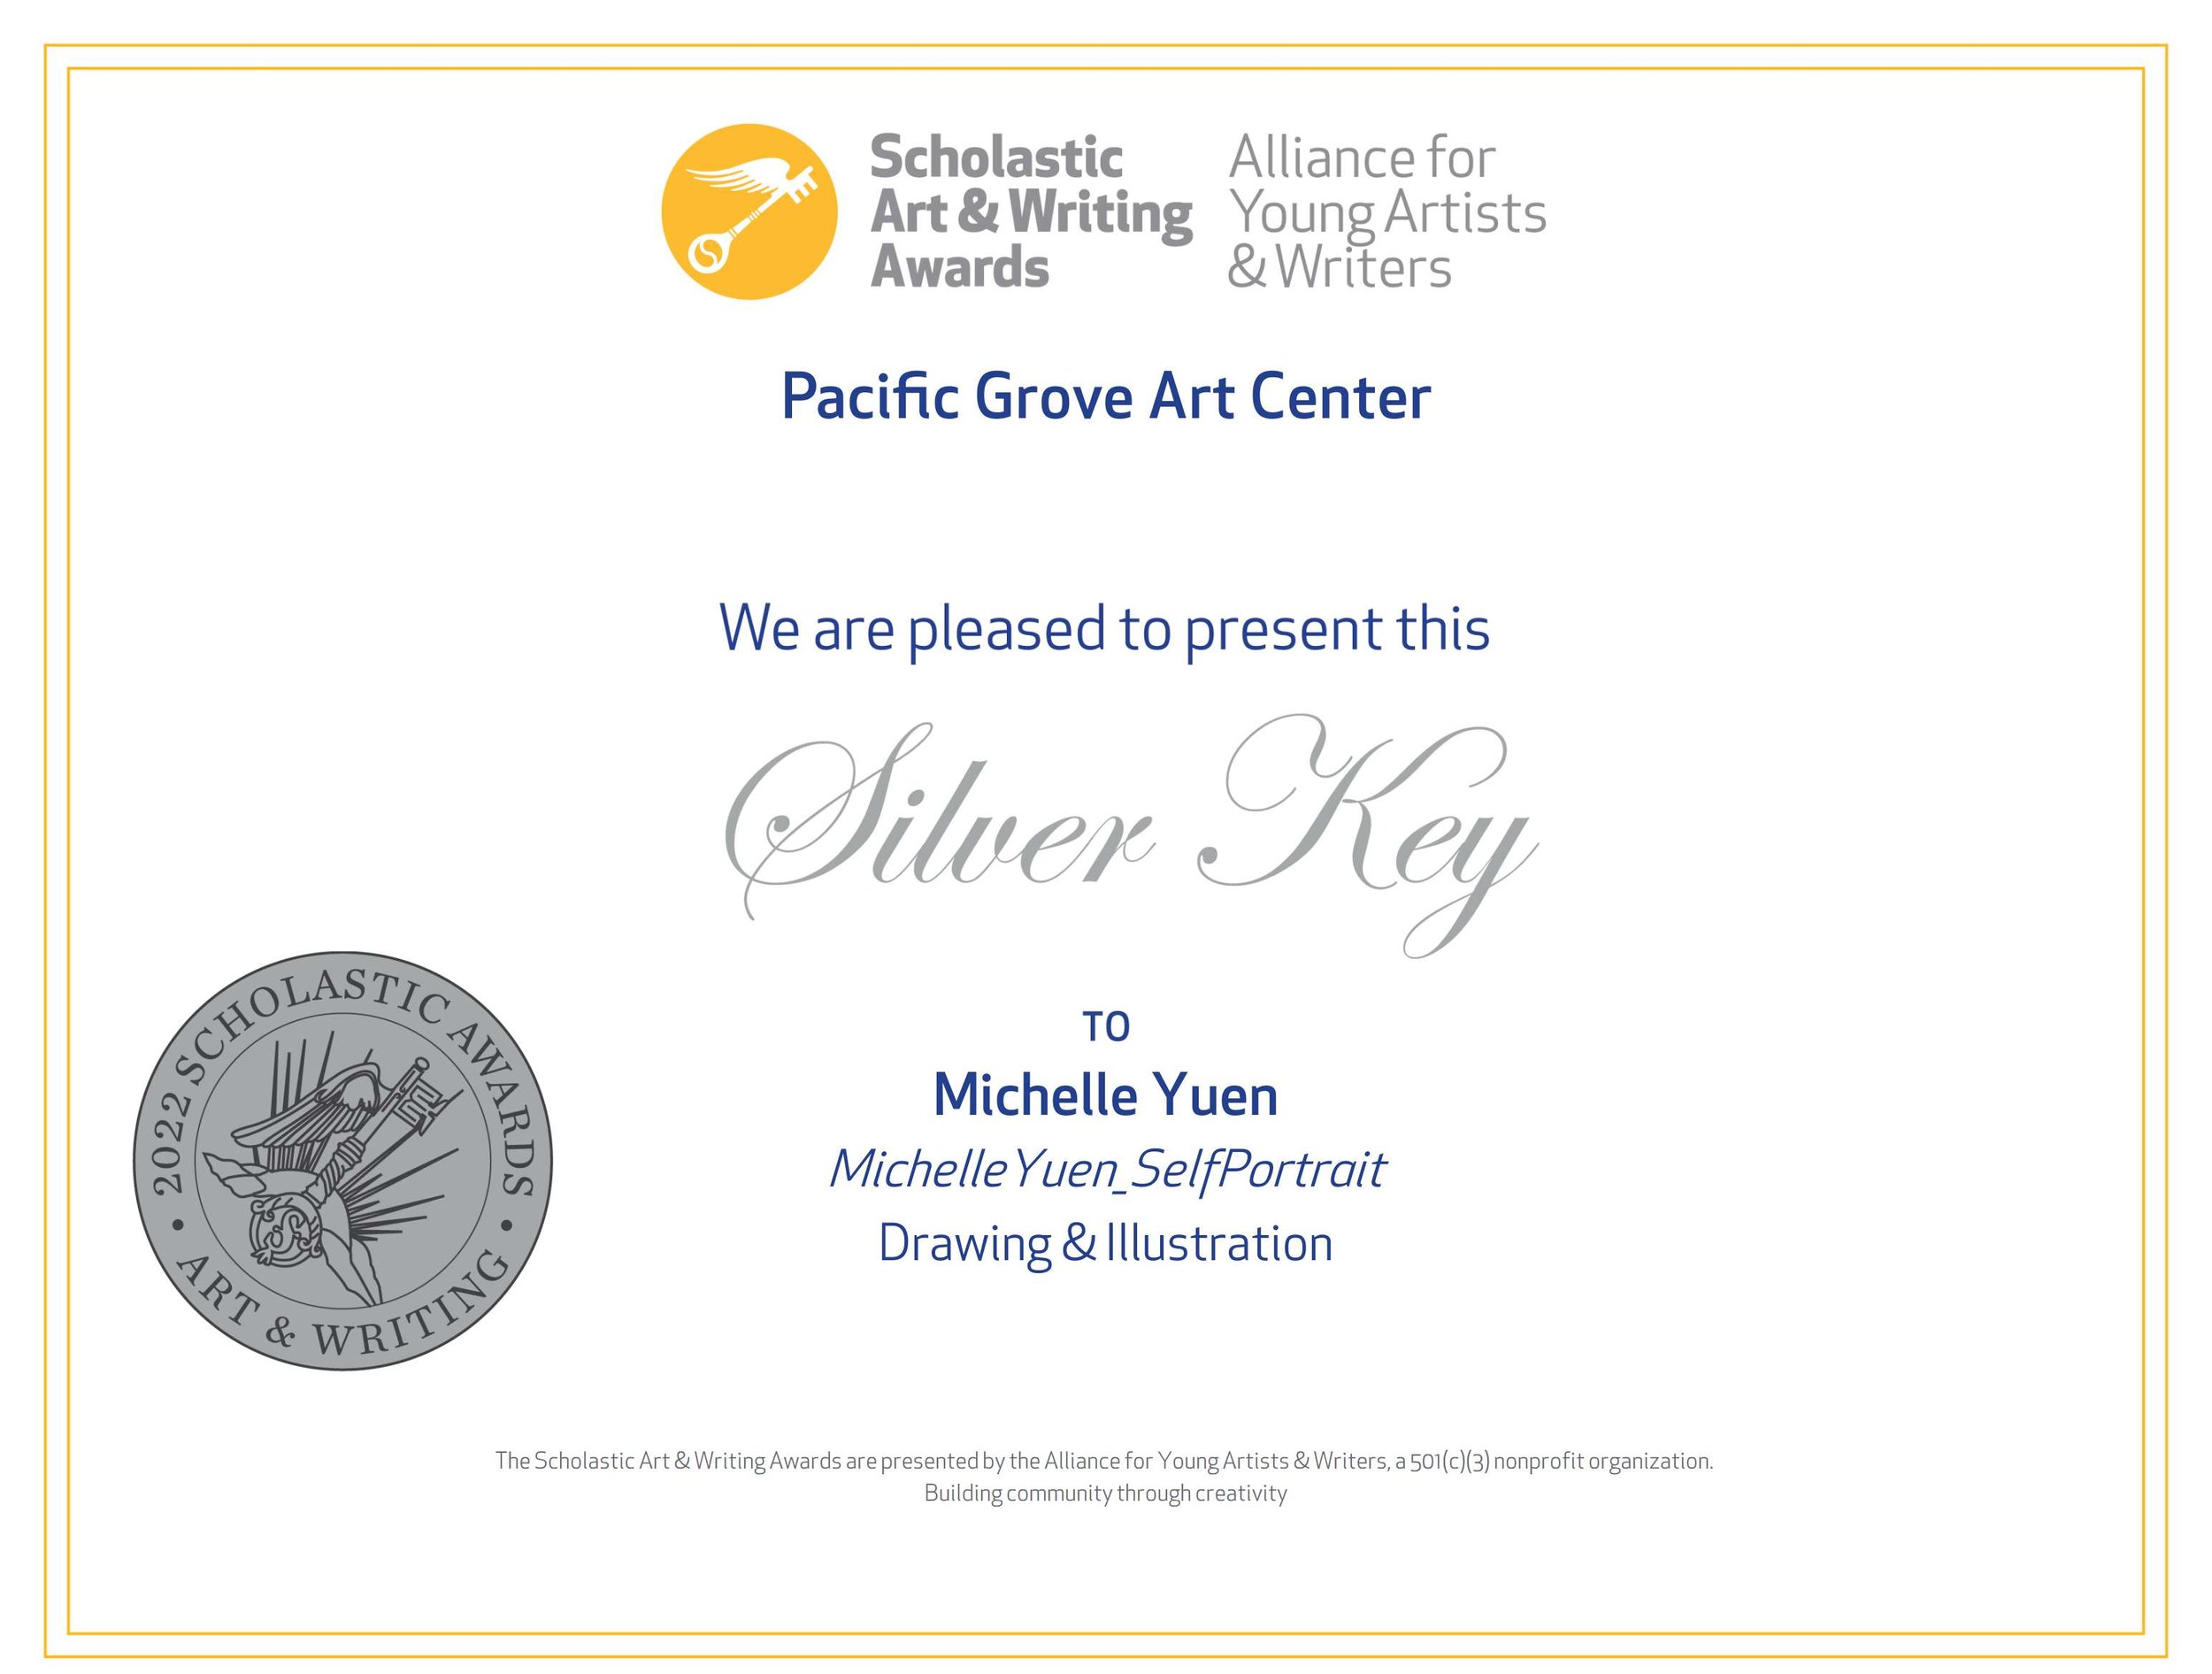 award_certificate_work_14213254_Silver_Key_Yuen_Michelle.jpeg